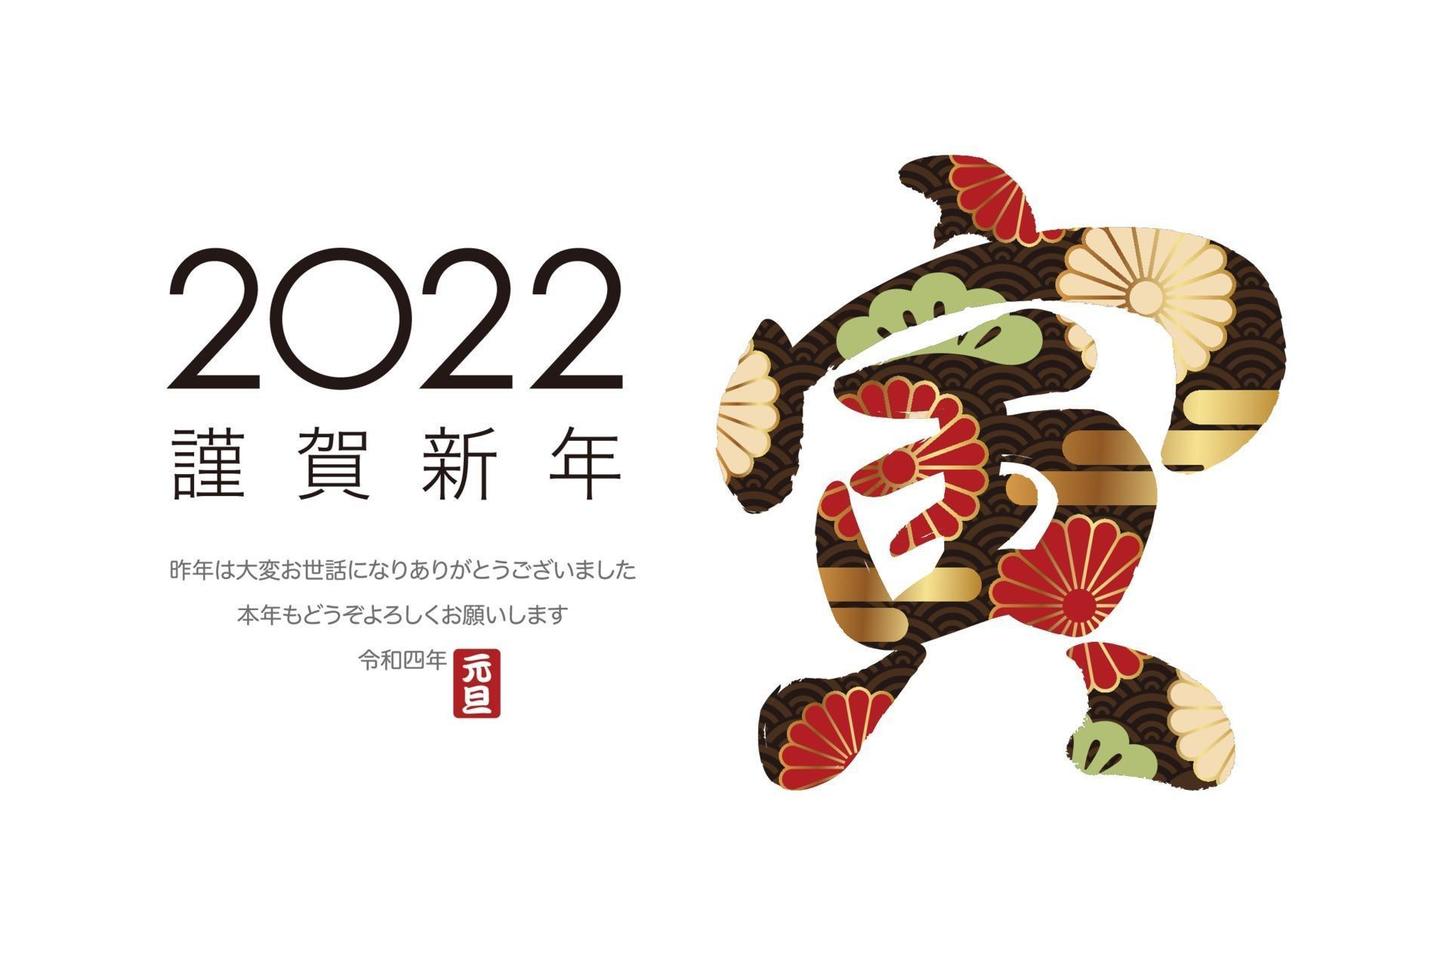 2022, ano do tigre, cartão comemorativo com um logotipo kanji e saudações vetor